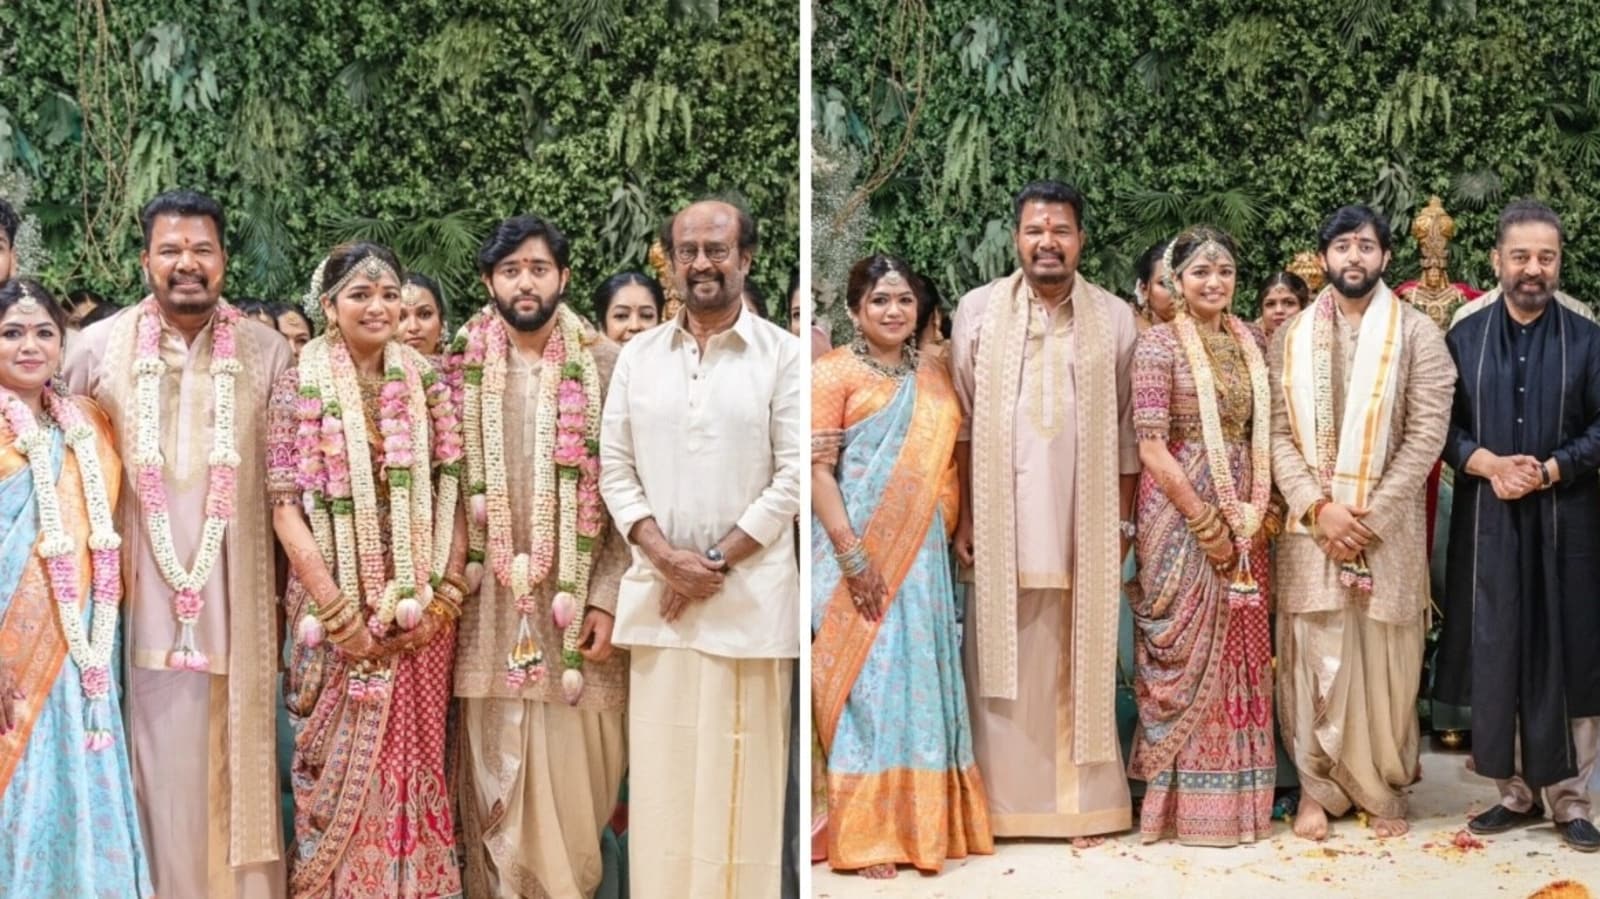 Córka indyjskiego reżysera S. Shankara, Aishwarya, bierze ślub, a Rajinikanth i Kamal Haasan biorą udział w weselu.  Zobacz zdjęcia